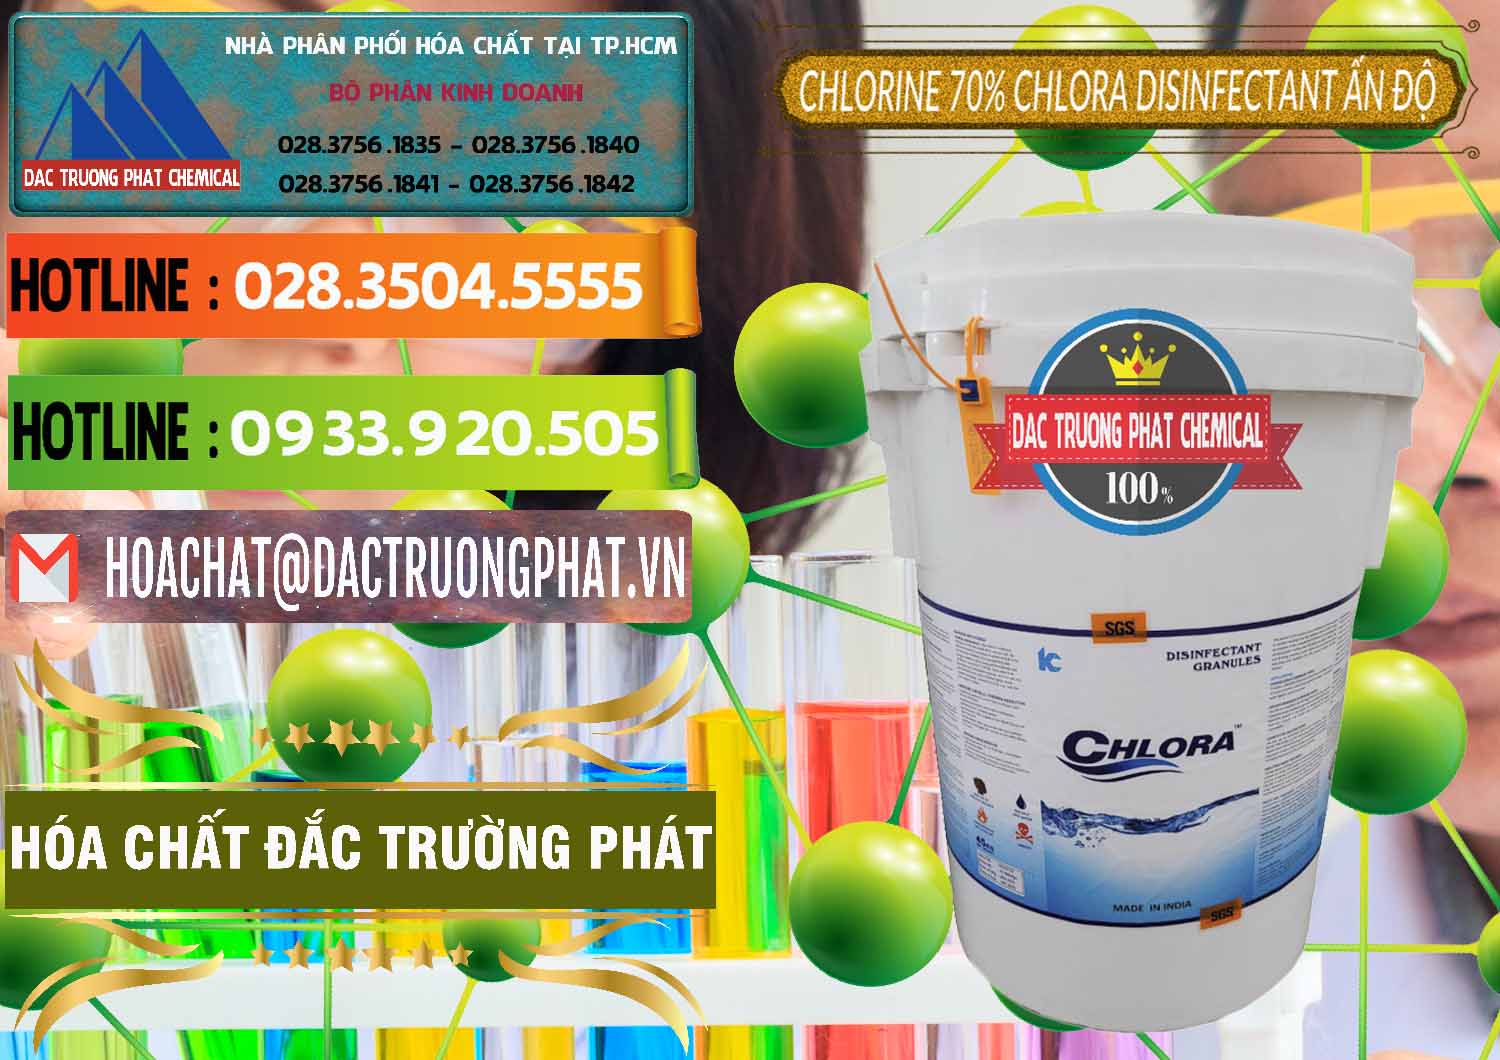 Cty nhập khẩu _ bán Chlorine – Clorin 70% Chlora Disinfectant Ấn Độ India - 0213 - Đơn vị chuyên cung cấp và kinh doanh hóa chất tại TP.HCM - cungcaphoachat.com.vn